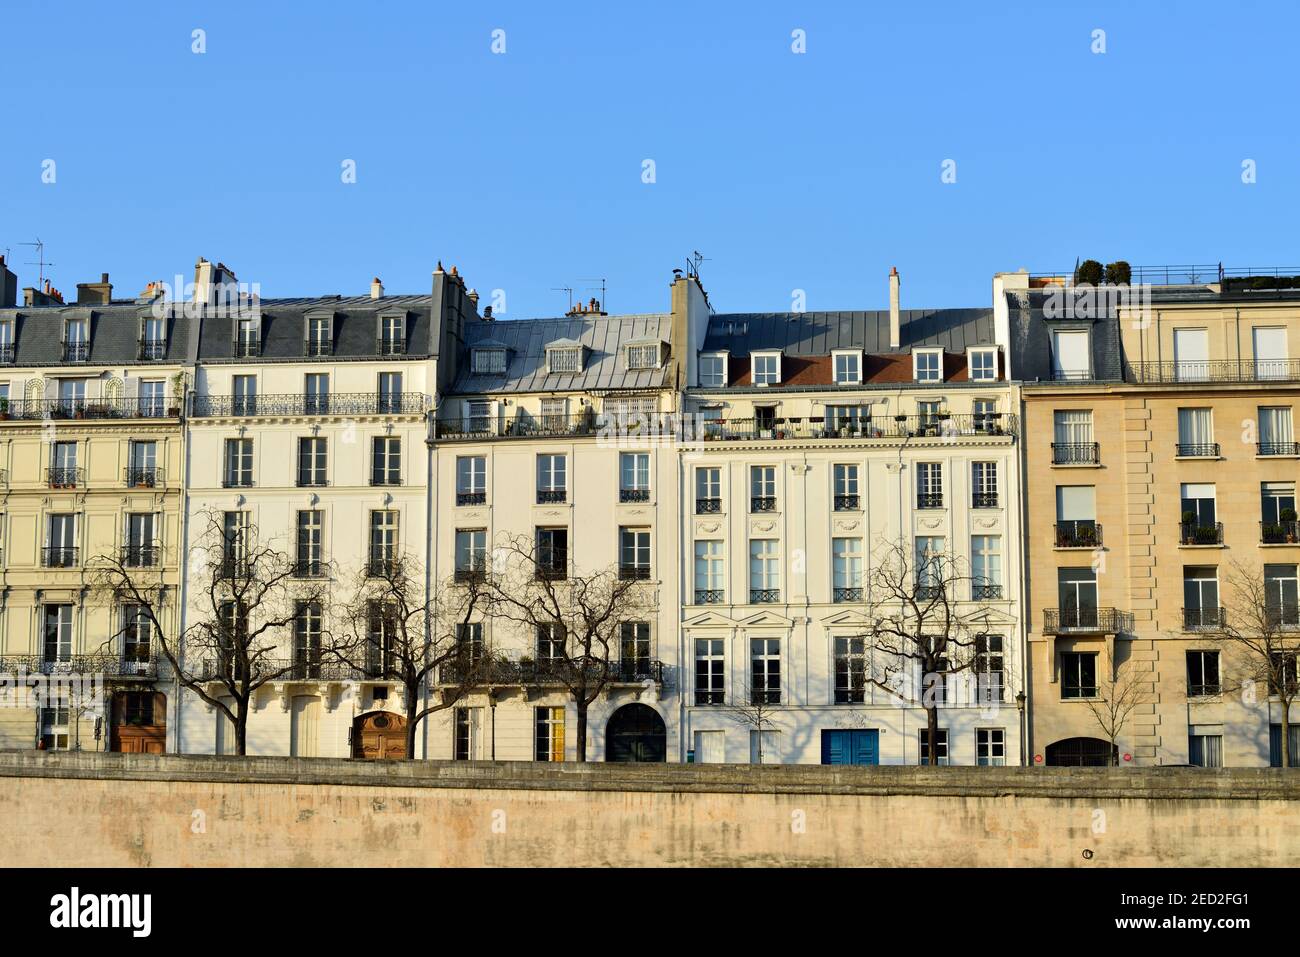 Residencias de lujo con terrazas al lado del río Sena, terraplén del río Sena, París, Francia Foto de stock